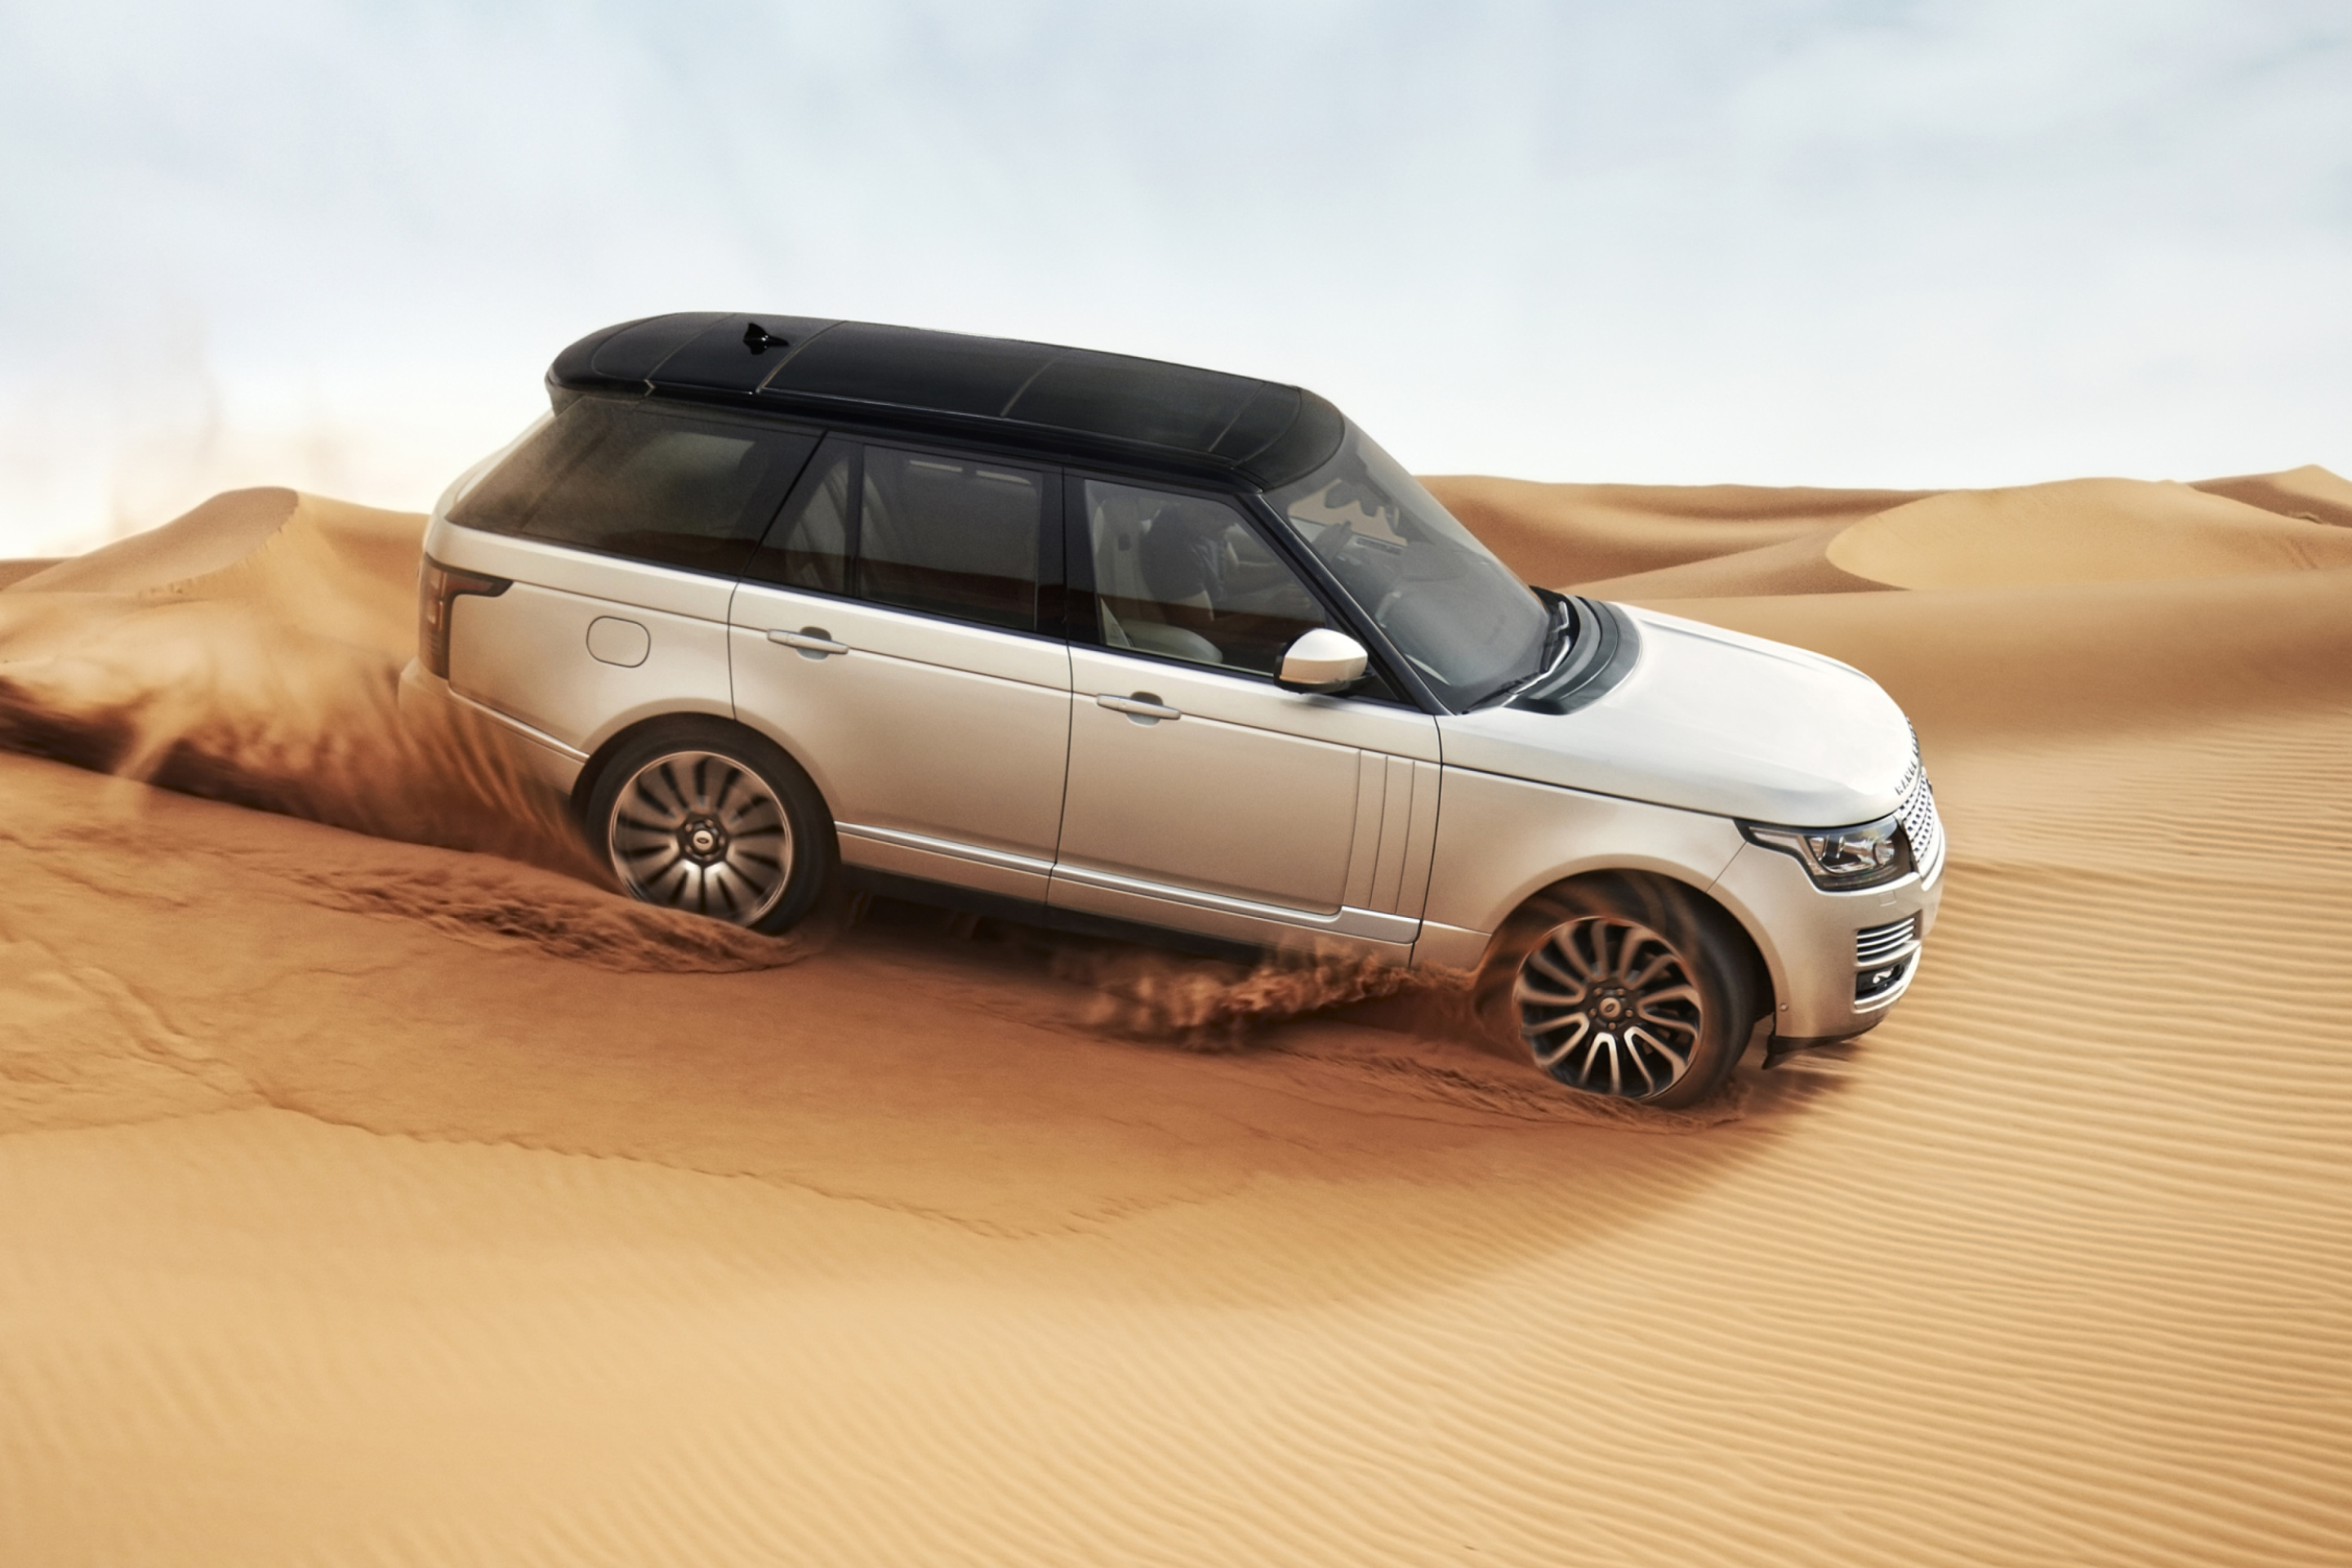 Range Rover In Desert wallpaper 2880x1920